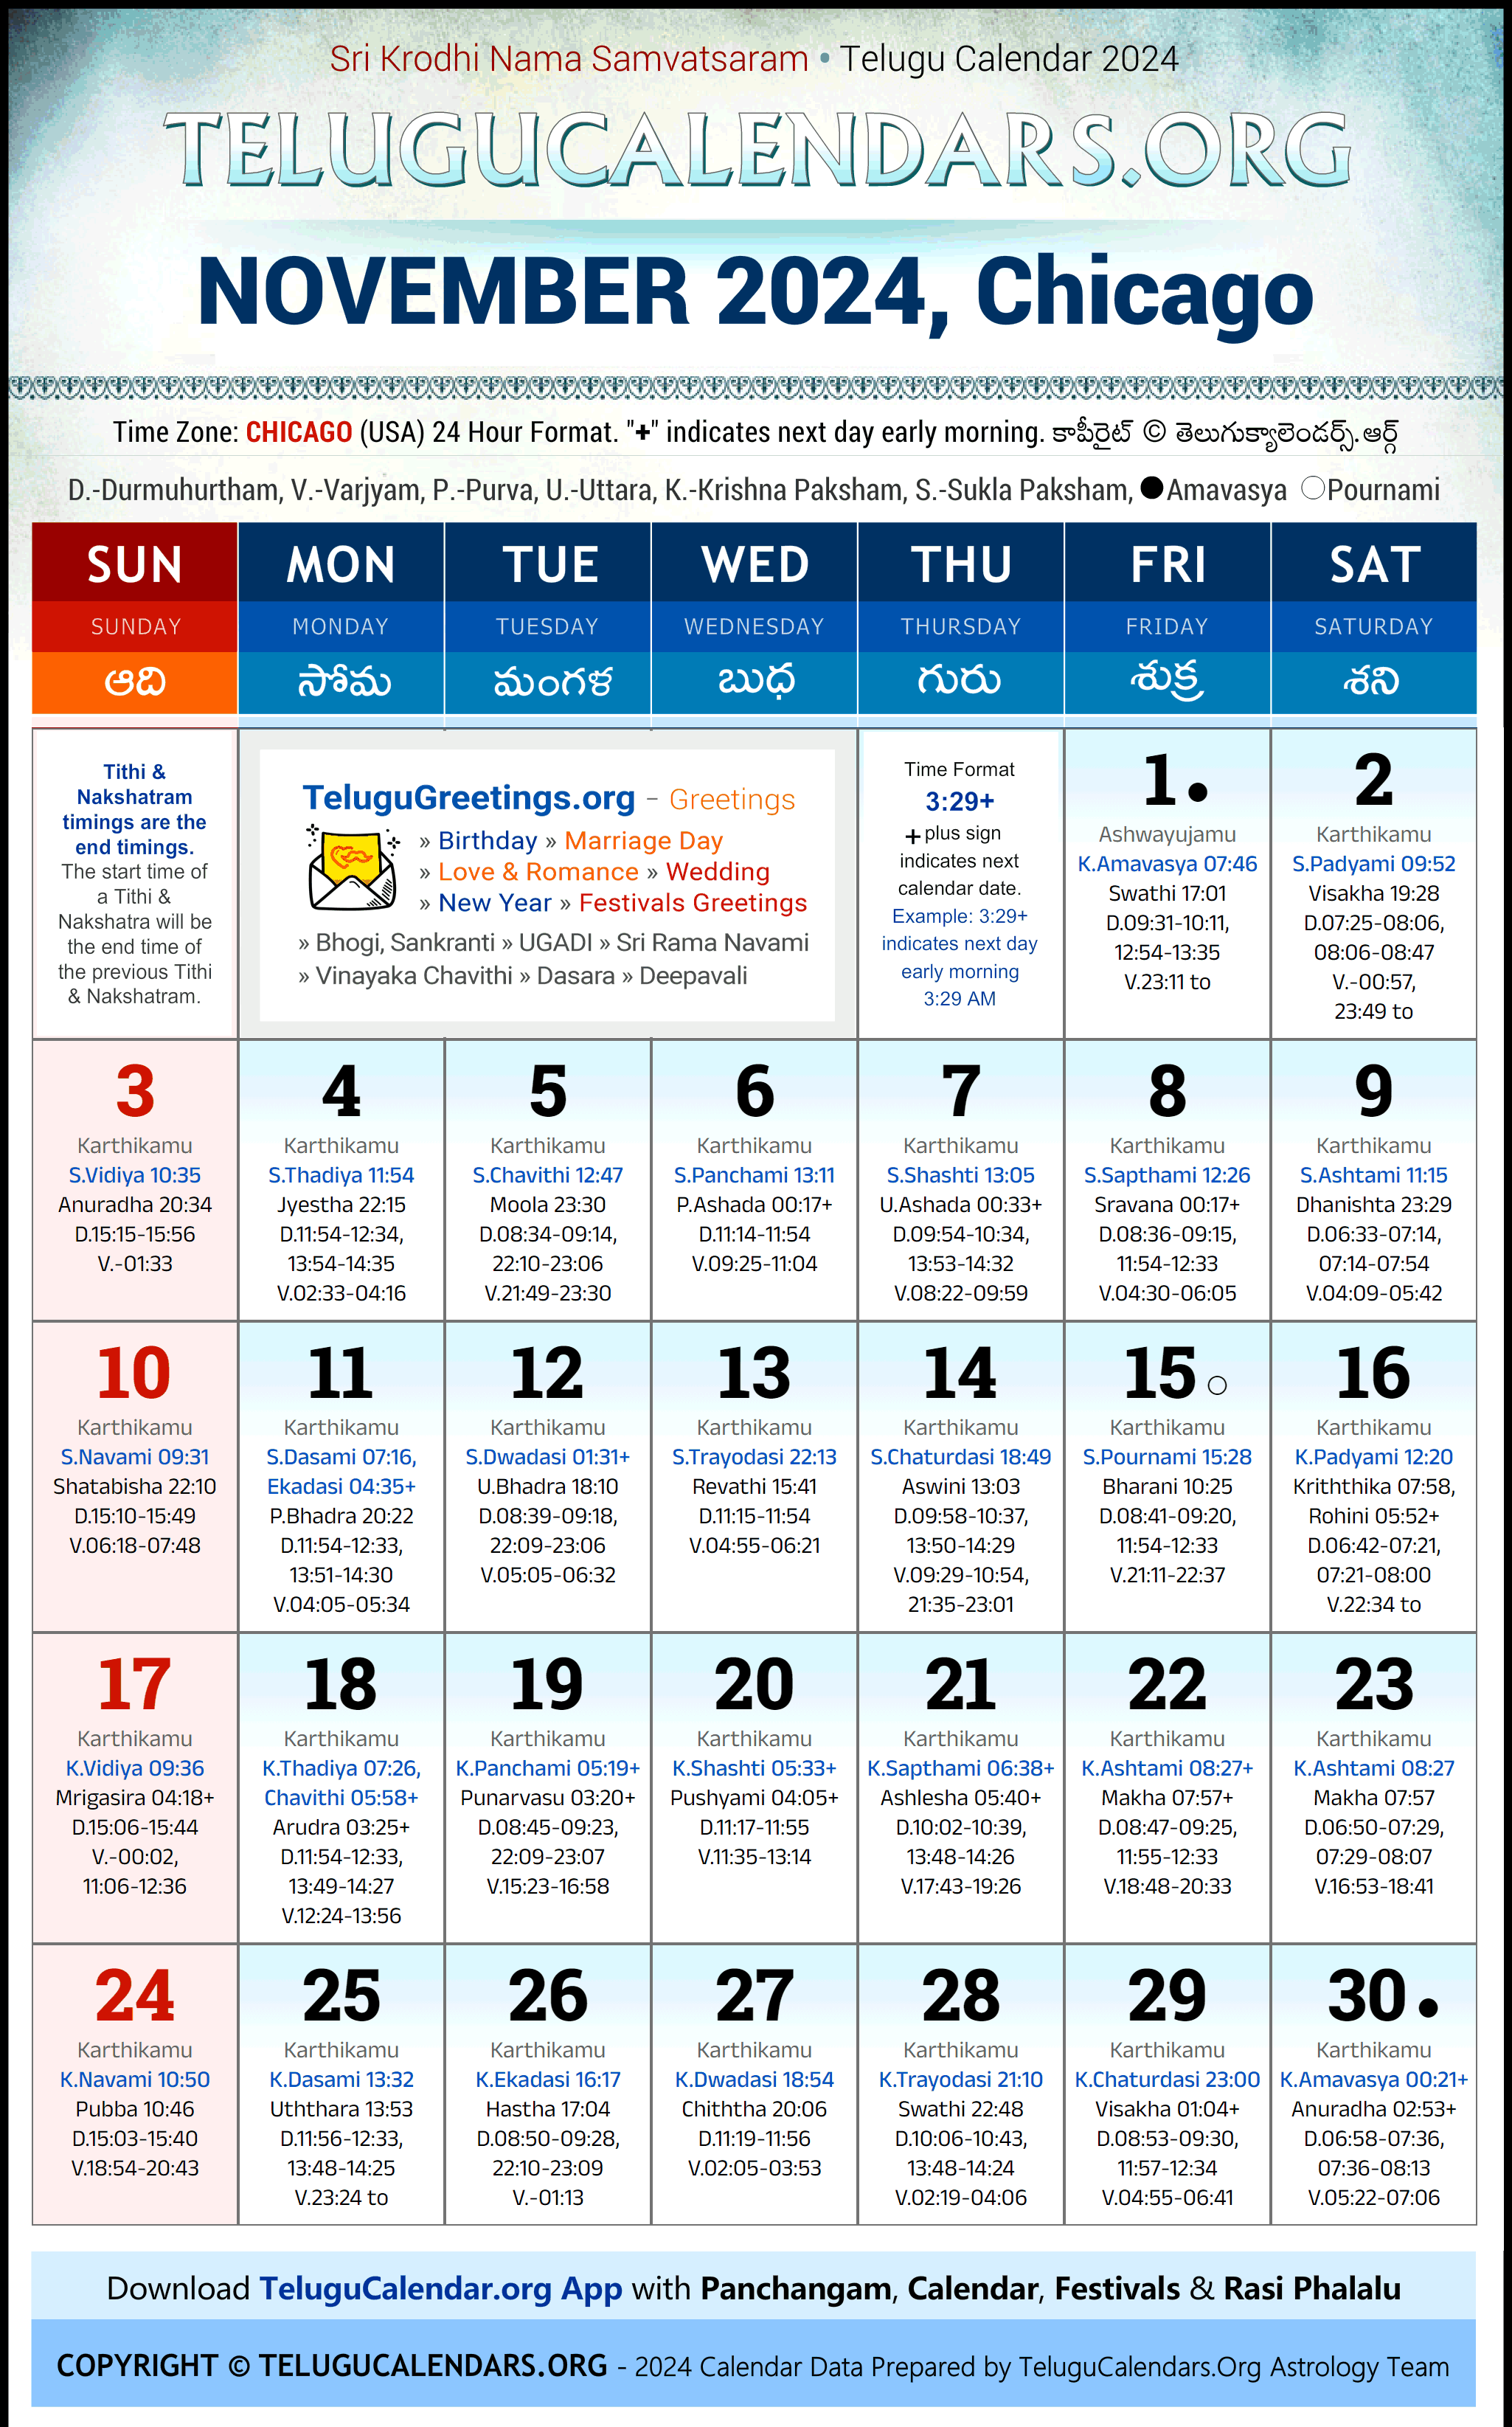 Telugu Calendar 2024 November Festivals for Chicago